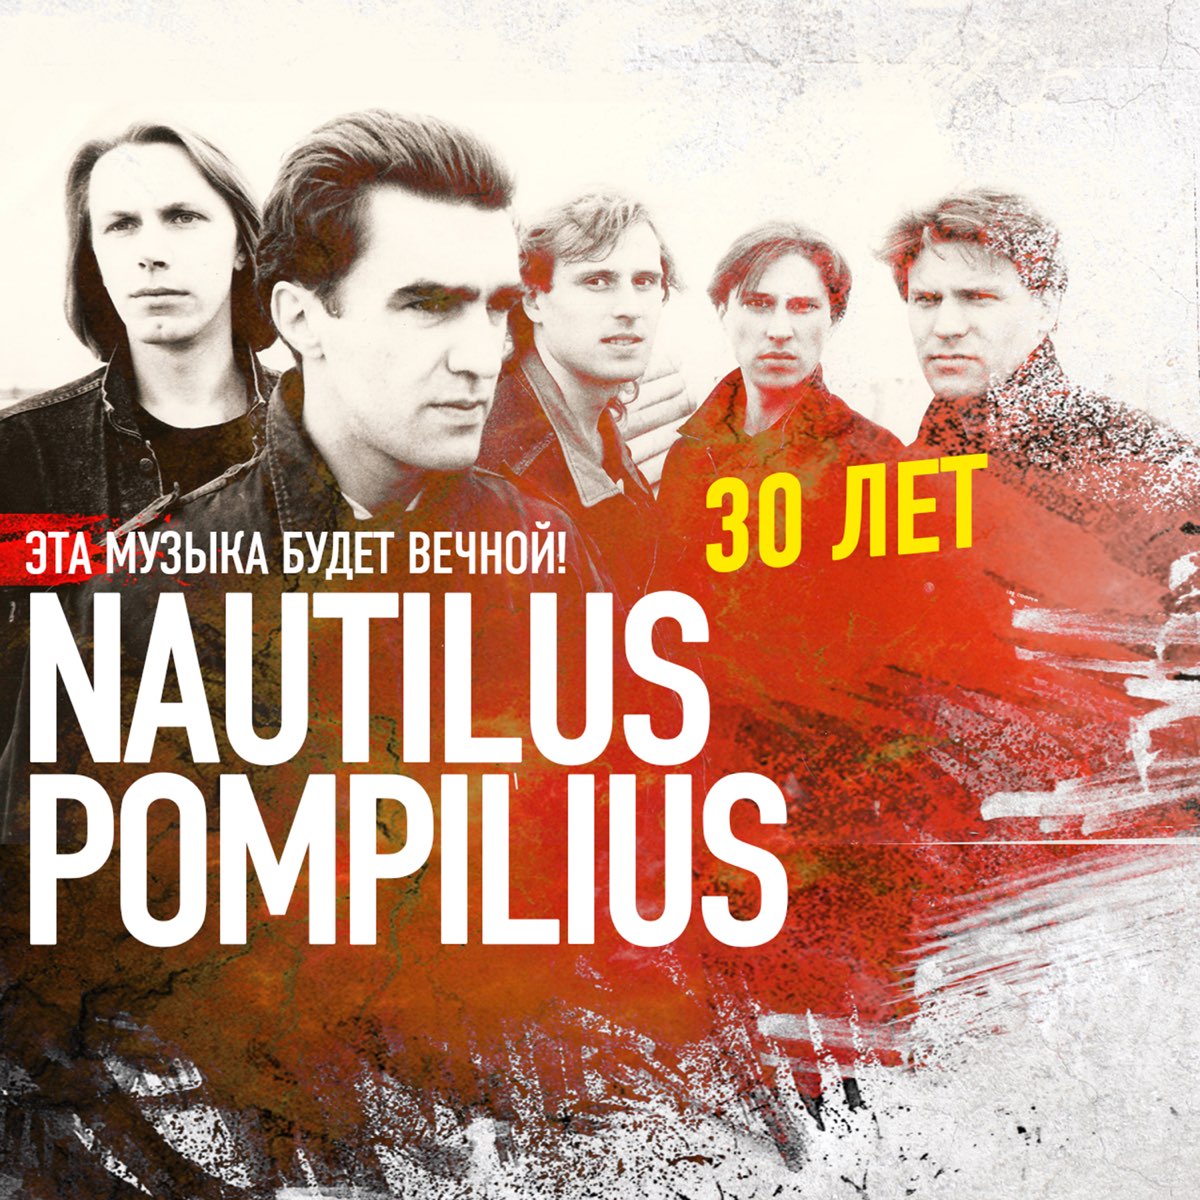 Есть моя воля песня. Наутилус Помпилиус. Наутилус группа. Наутилус 1992. Группа Nautilus Pompilius плакат.